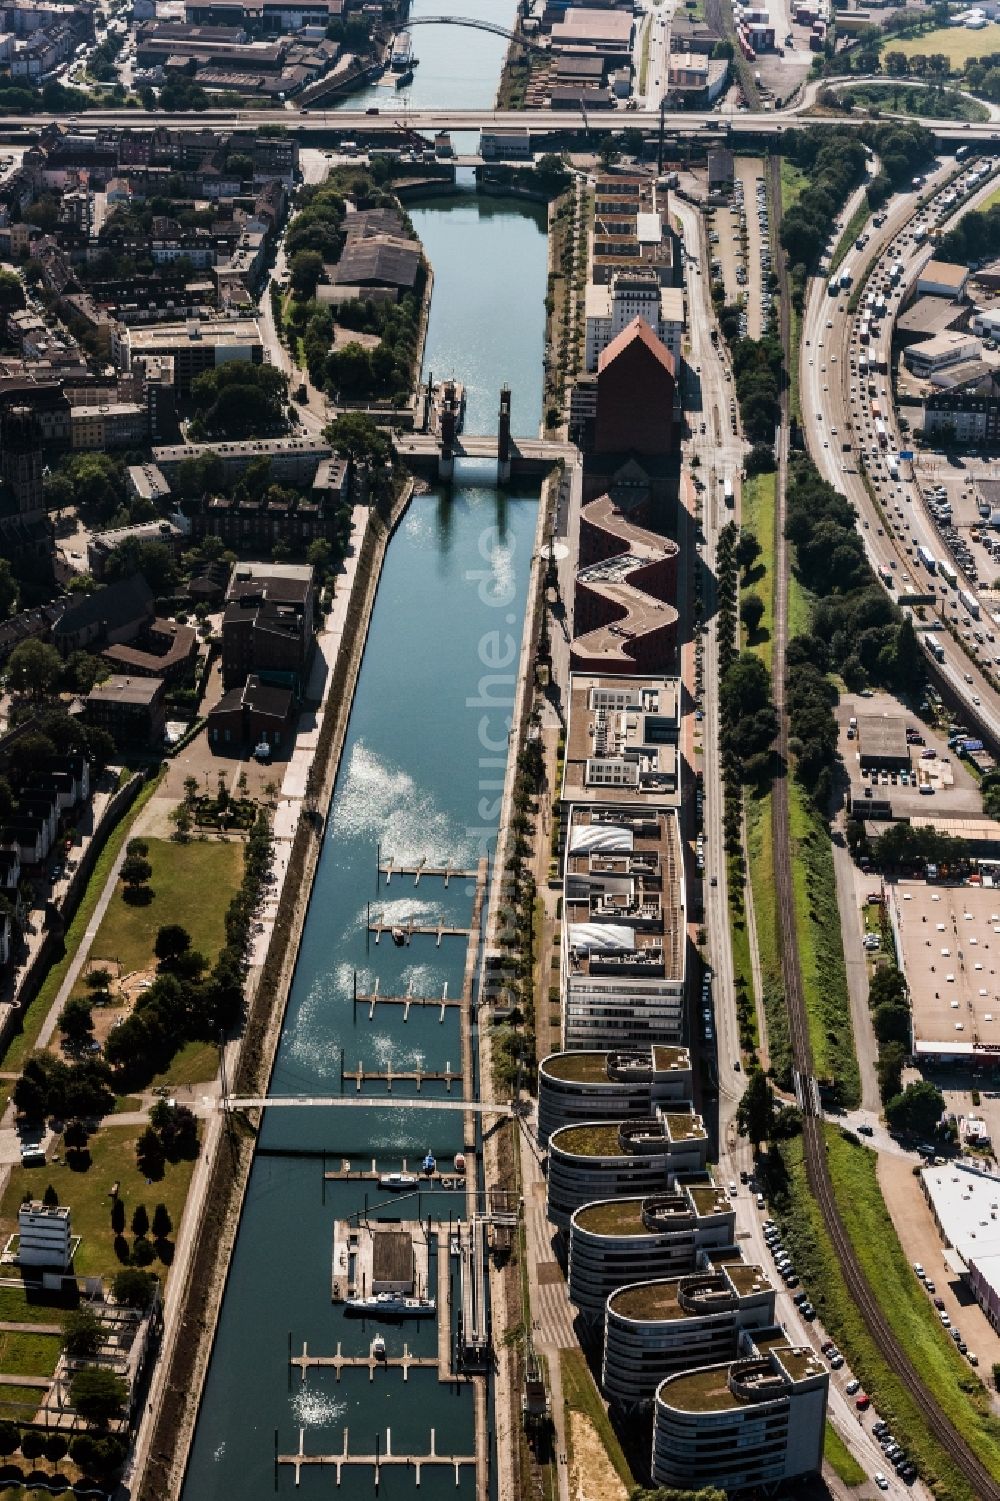 Luftbild Duisburg - Hafenanlage des Innenhafen mit dem Becken Holzhafen in Duisburg im Bundesland Nordrhein-Westfalen